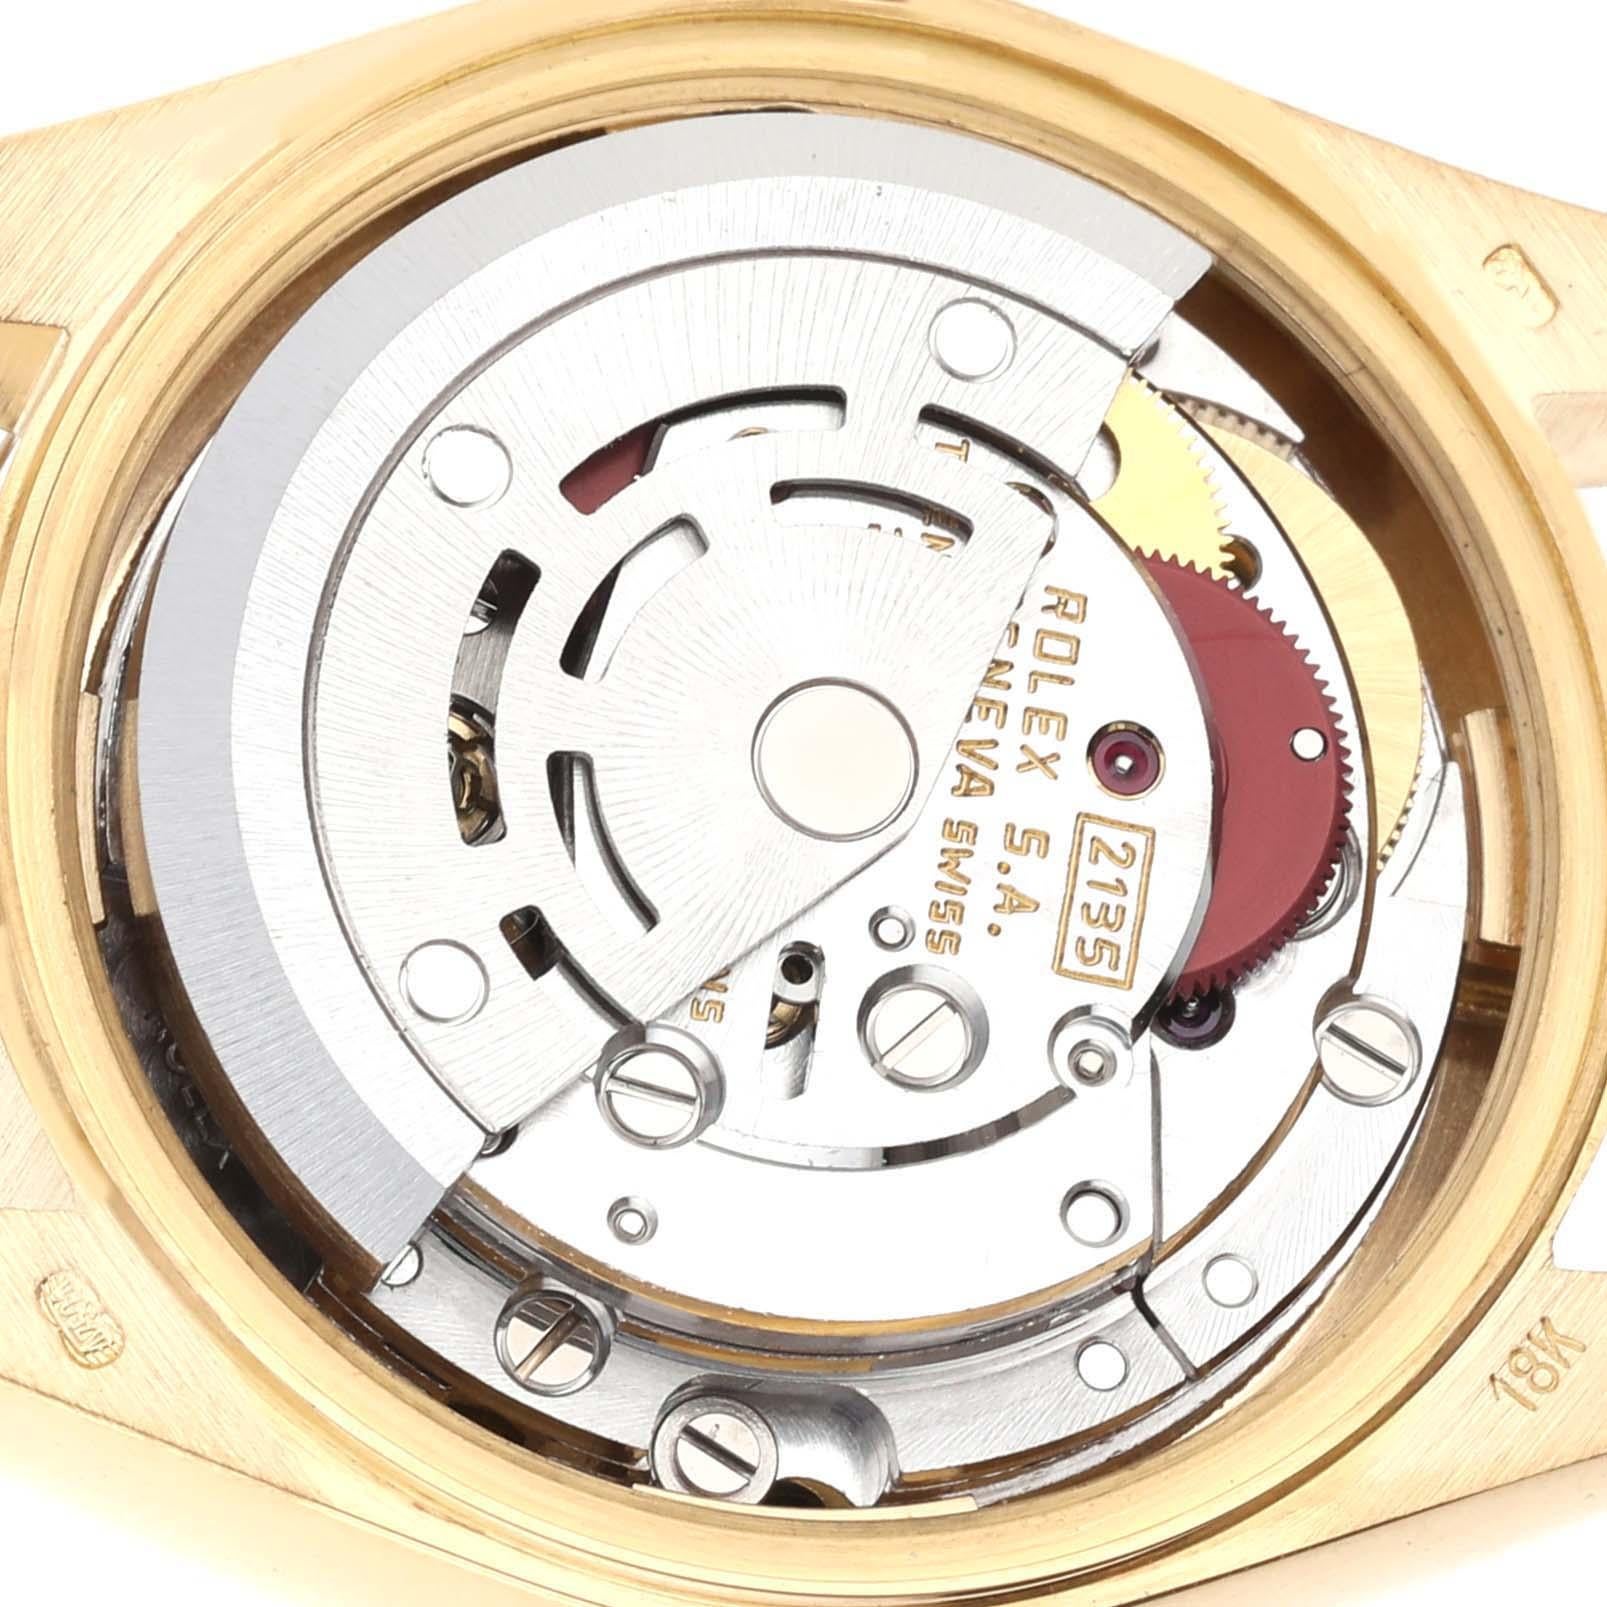 Rolex Datejust President Diamant-Zifferblatt Gelbgold Damenuhr 69178. Offiziell zertifiziertes Chronometer-Automatikwerk mit automatischem Aufzug. Oyster-Gehäuse aus 18 Karat Gelbgold mit einem Durchmesser von 26,0 mm. Rolex Logo auf der Krone.